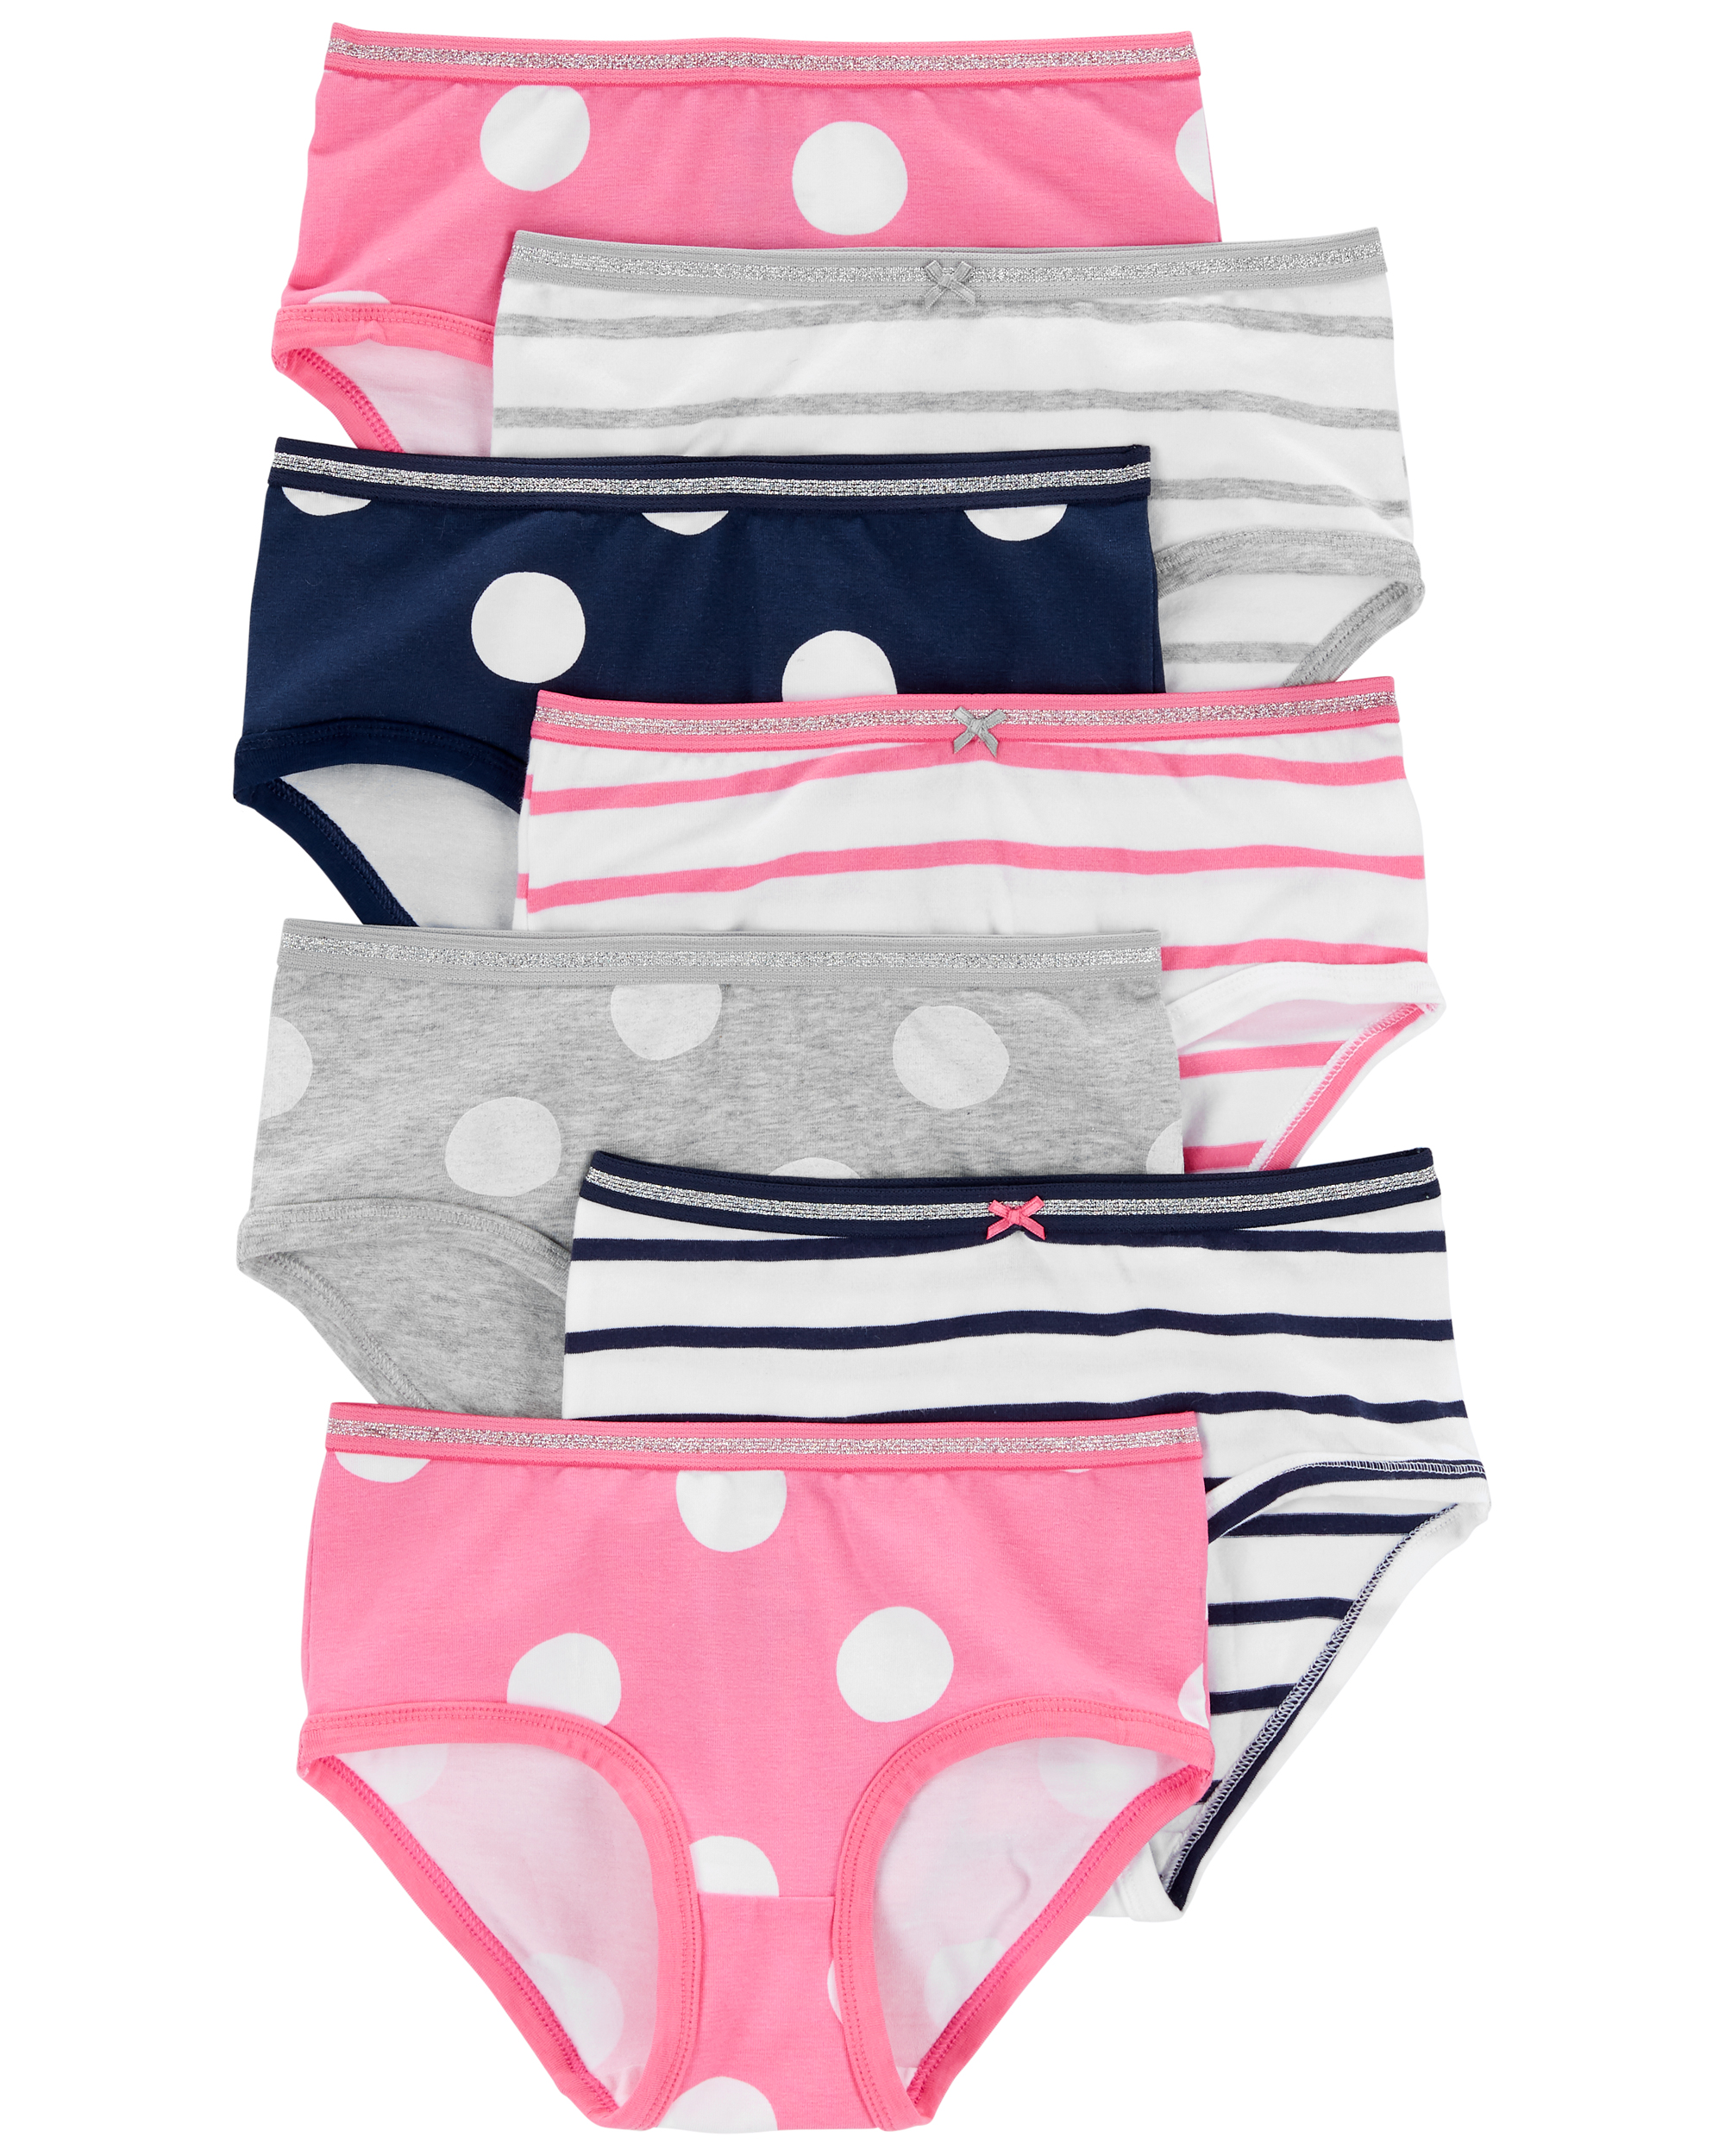 INTIMO Girls' Shopkins Underwear 7 Pack